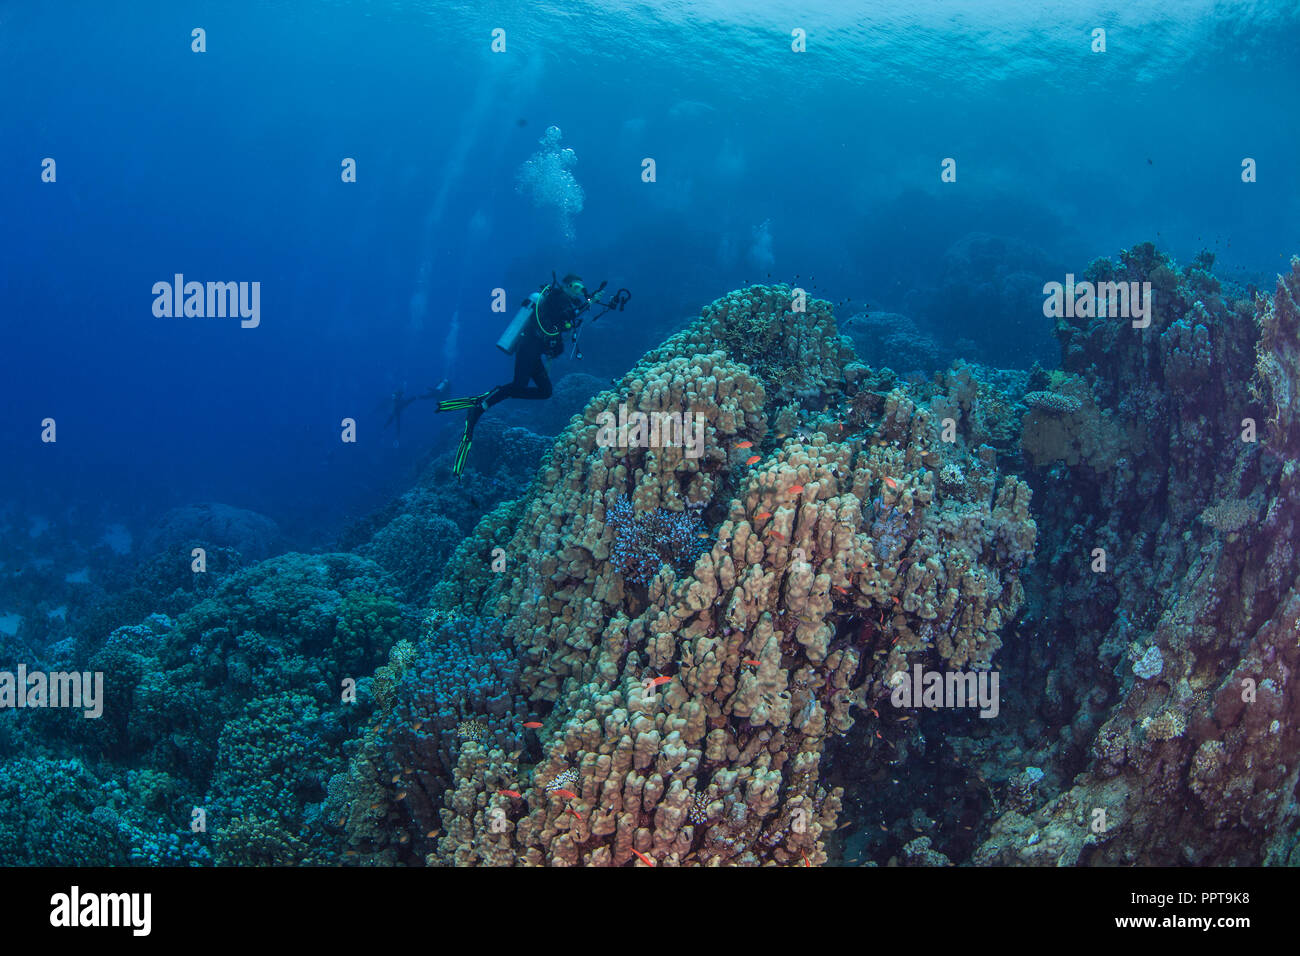 Plongeur femelle, vidéographe records la vie marine dans la région montagneuse de récifs coralliens de la Mer Rouge. Septembre, 2018. Banque D'Images